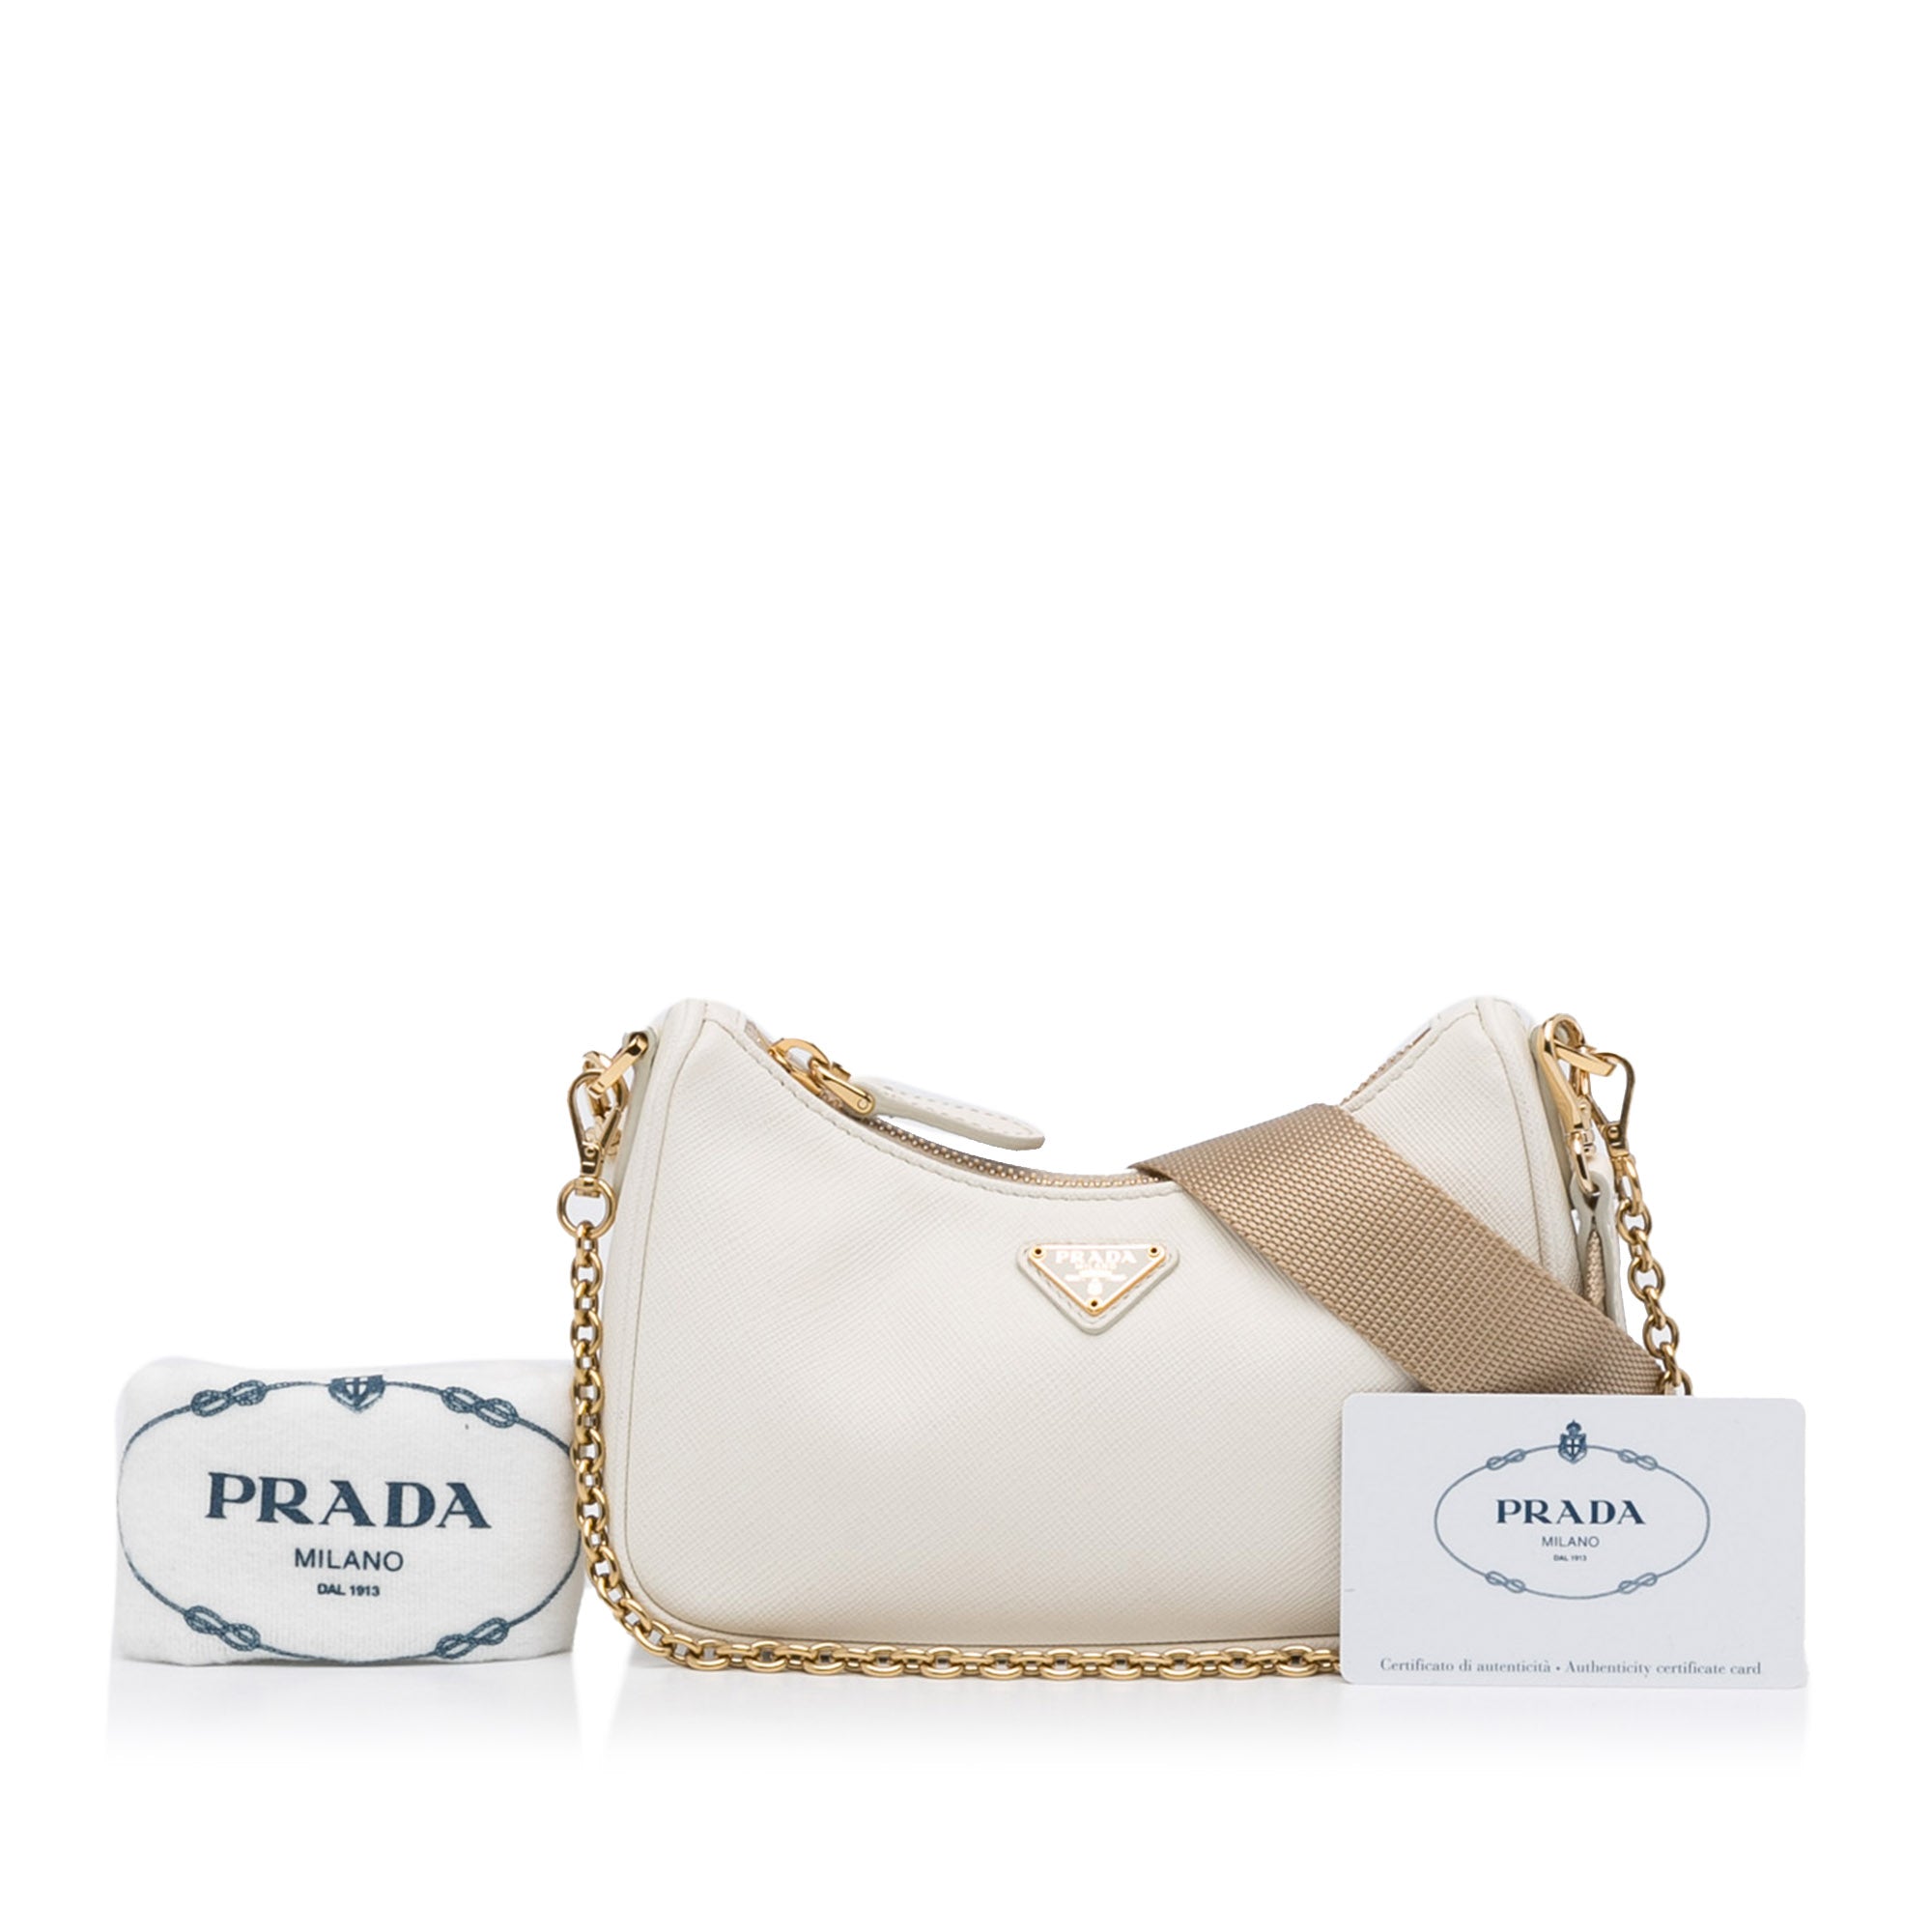 Prada ` Re-edition 2005` Saffiano Leather Bag in White